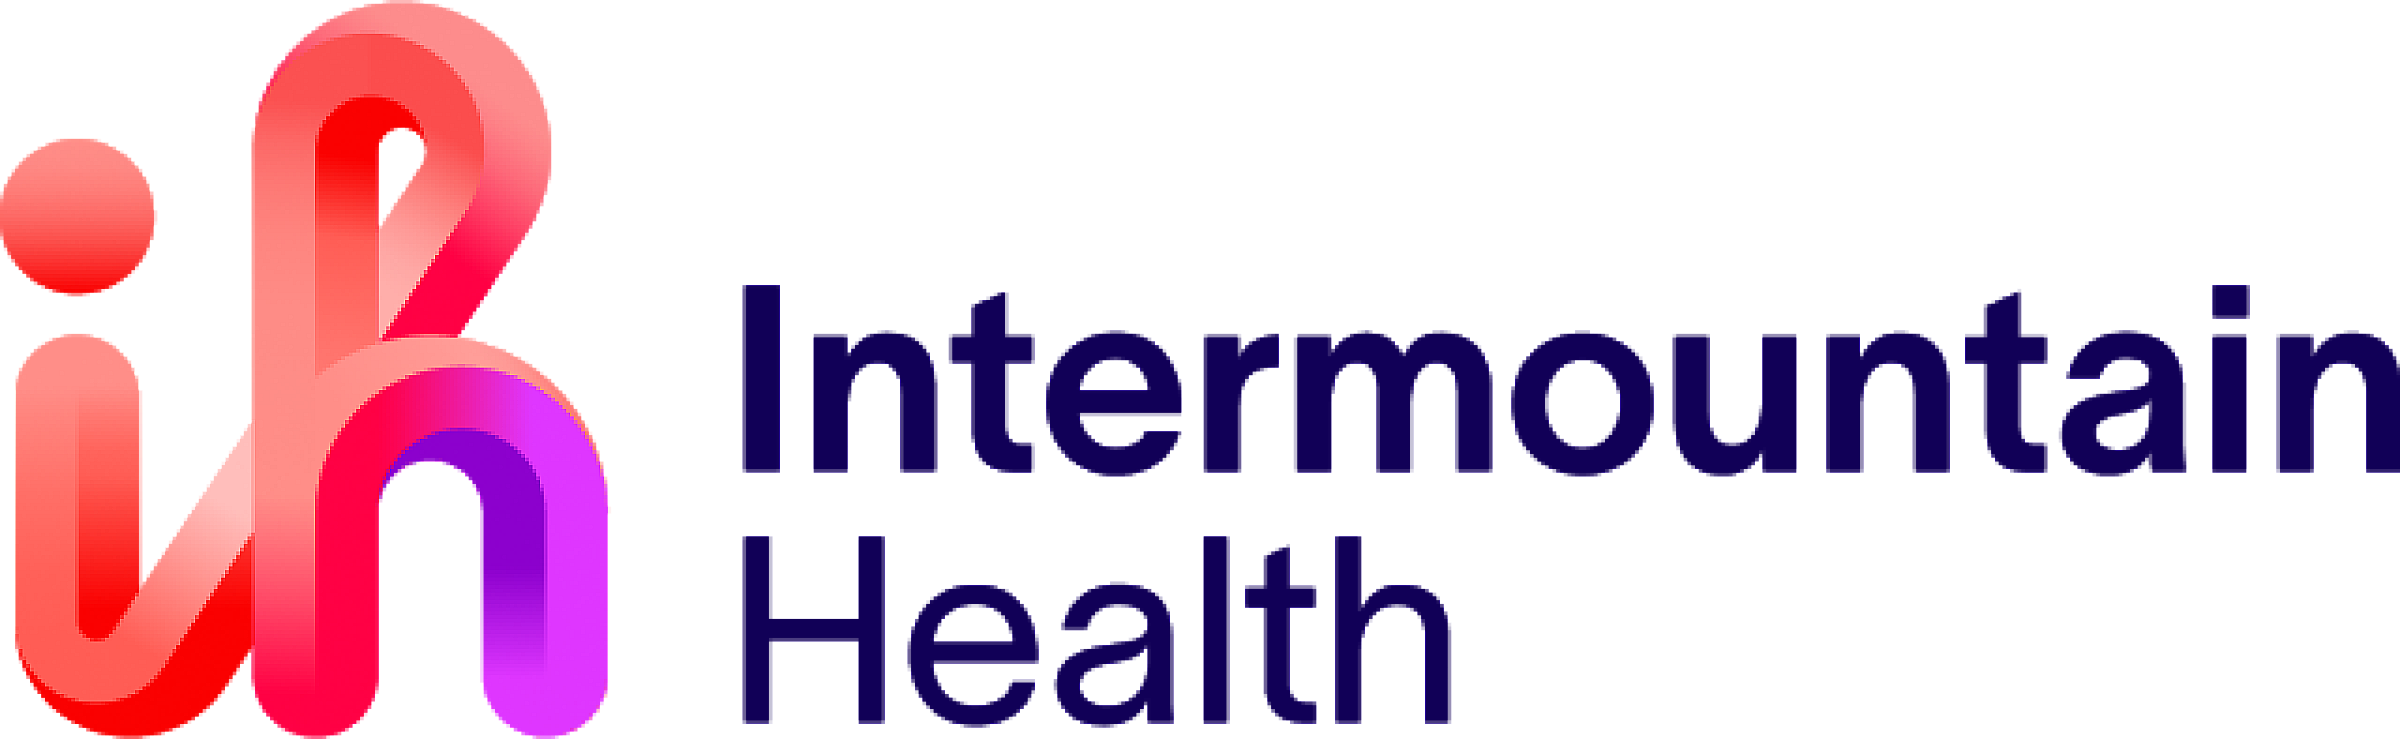 Intermountain Health Logo